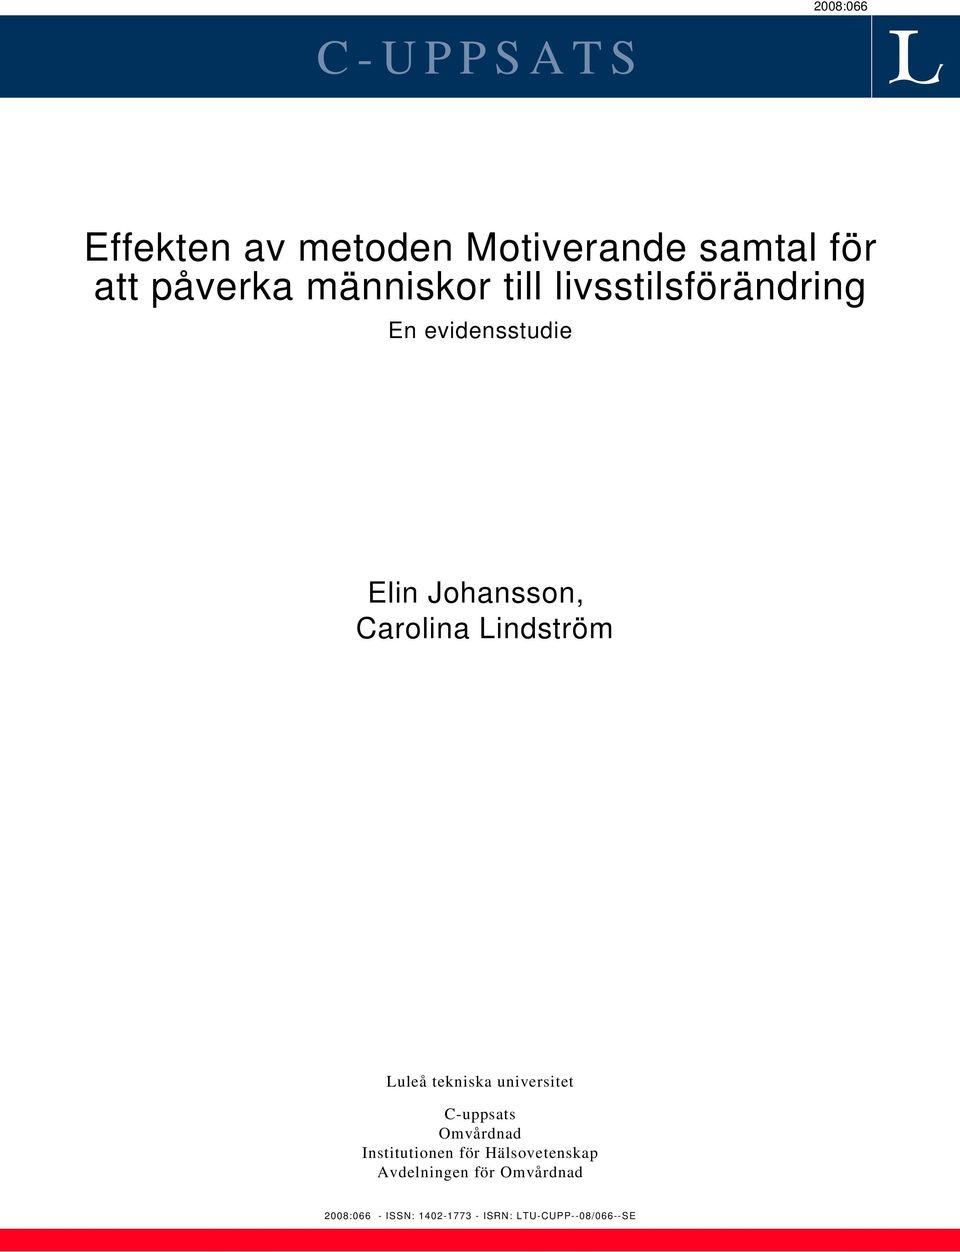 Lindström Luleå tekniska universitet C-uppsats Omvårdnad Institutionen för